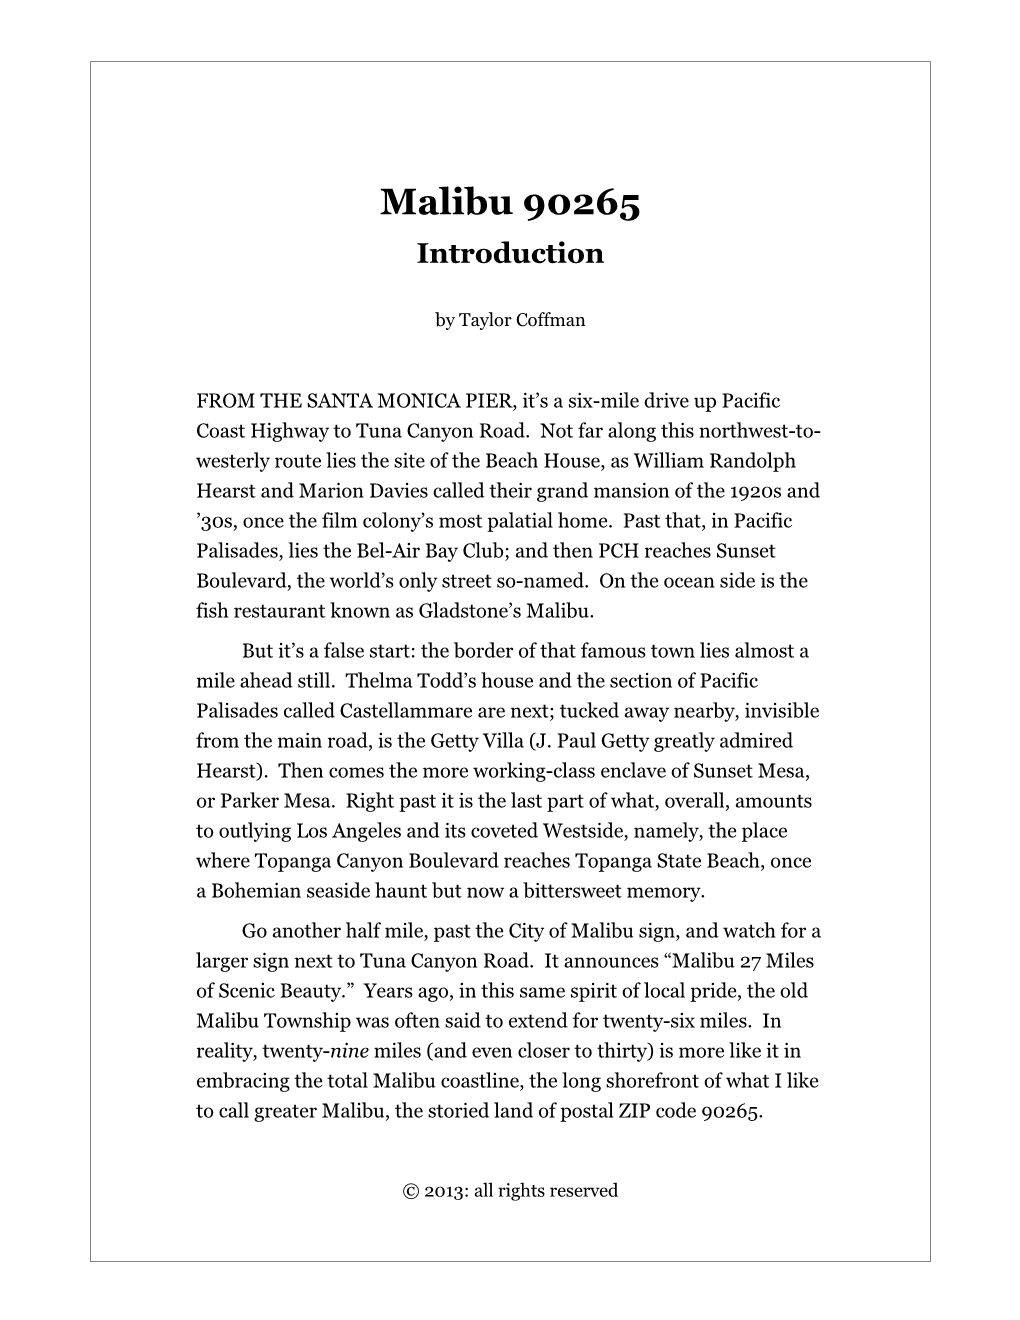 Malibu 90265 Introduction